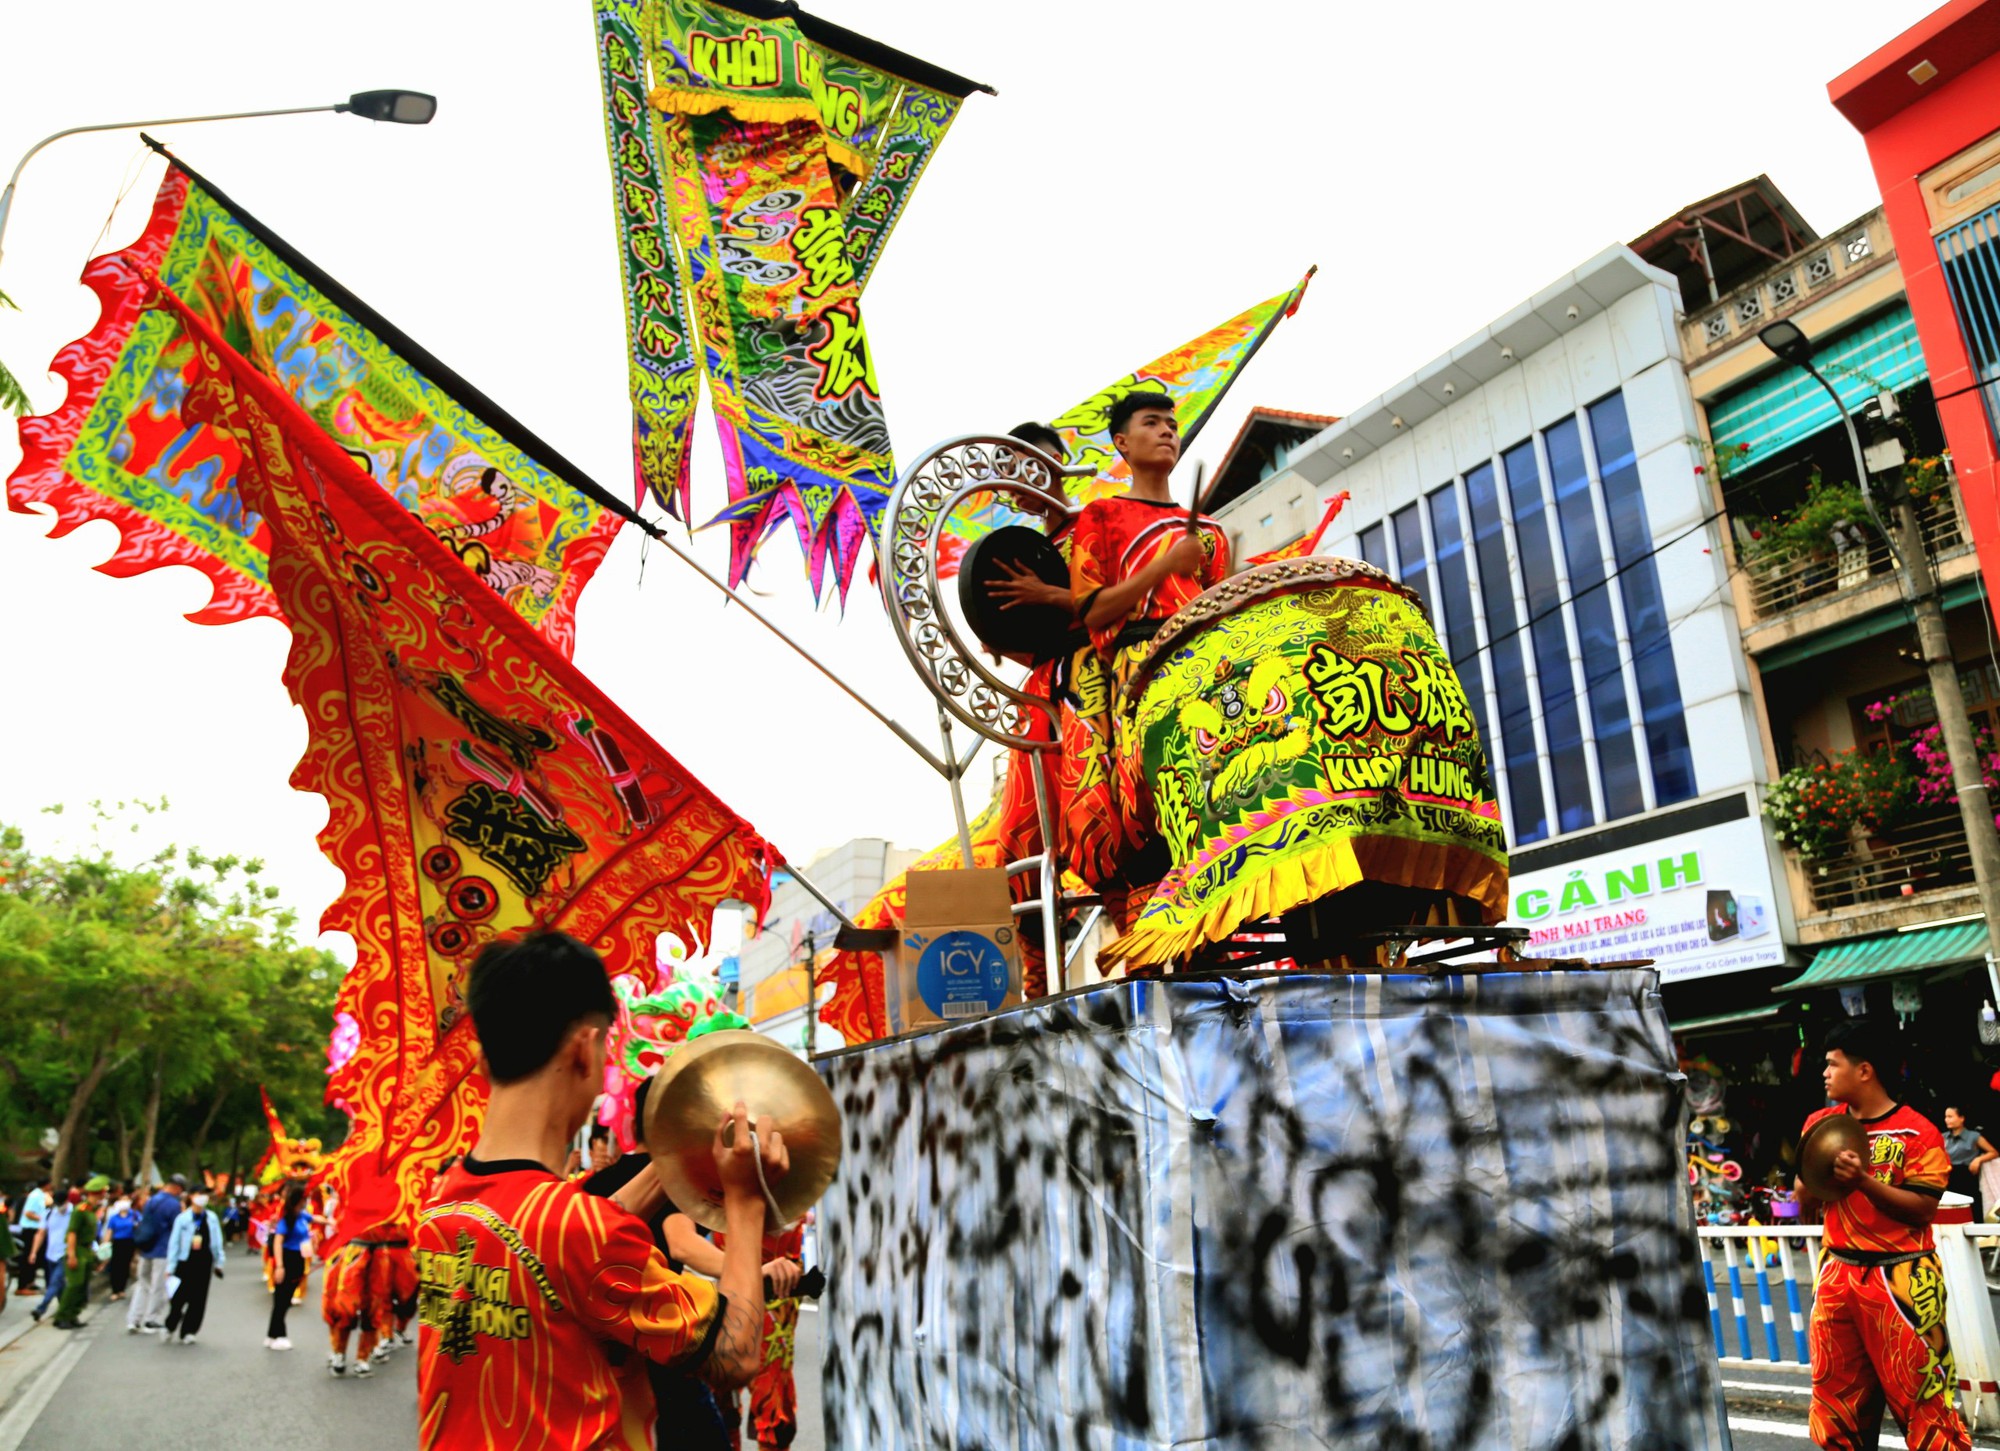 Hãy cùng đến với Lễ hội quảng diễn Lân Sư Rồng năm nay để được chứng kiến những màn trình diễn ấn tượng, đầy màu sắc của các lân sư rồng. Bạn sẽ được trải nghiệm không khí hân hoan và đầy sôi động của lễ hội, và có thể khám phá nền văn hóa truyền thống độc đáo của Việt Nam thông qua lễ hội này.